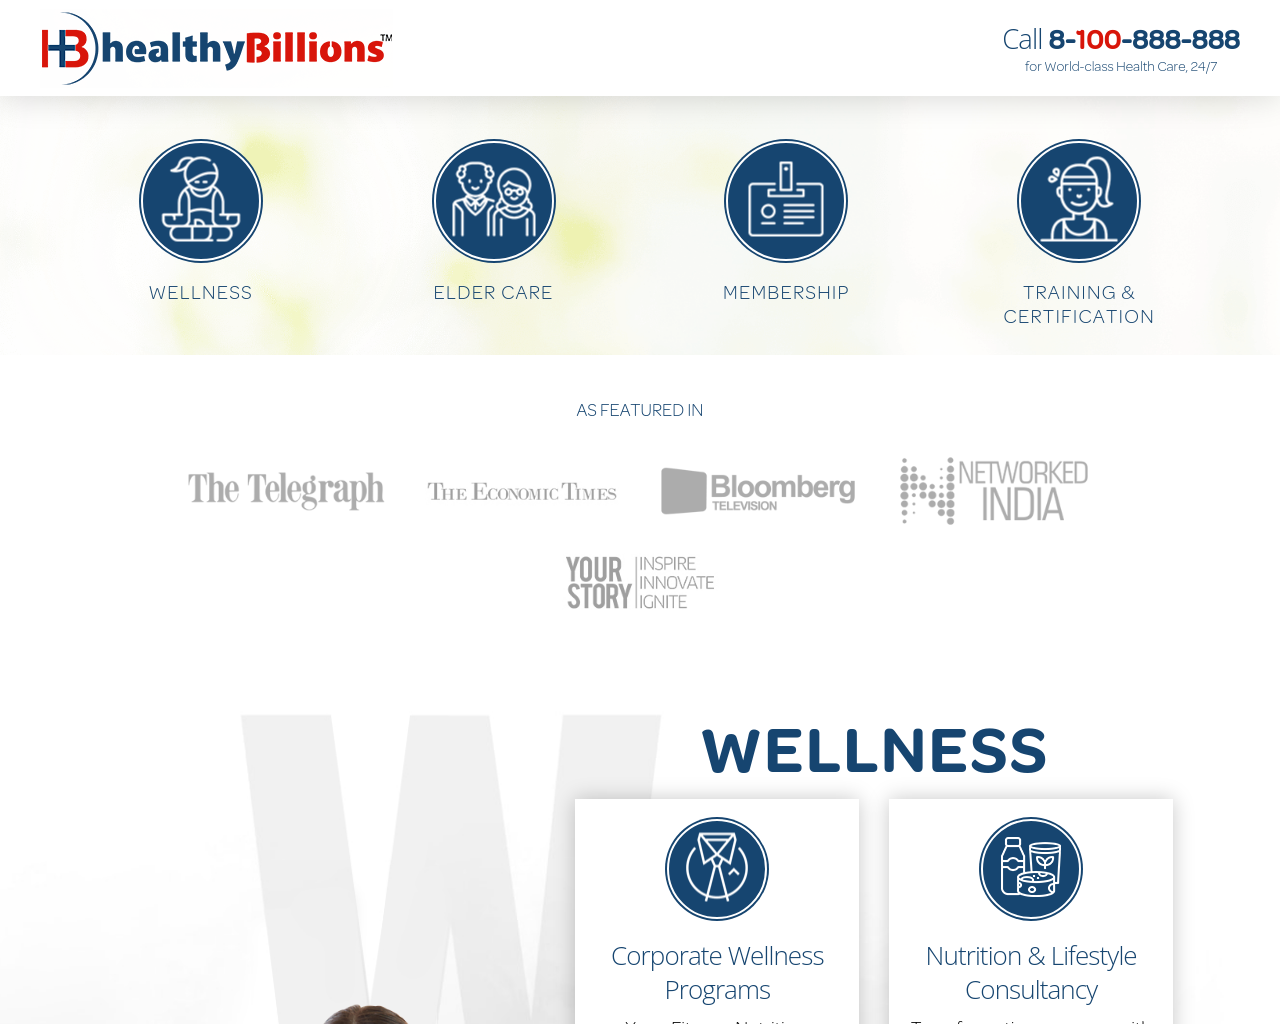 healthybillions.com